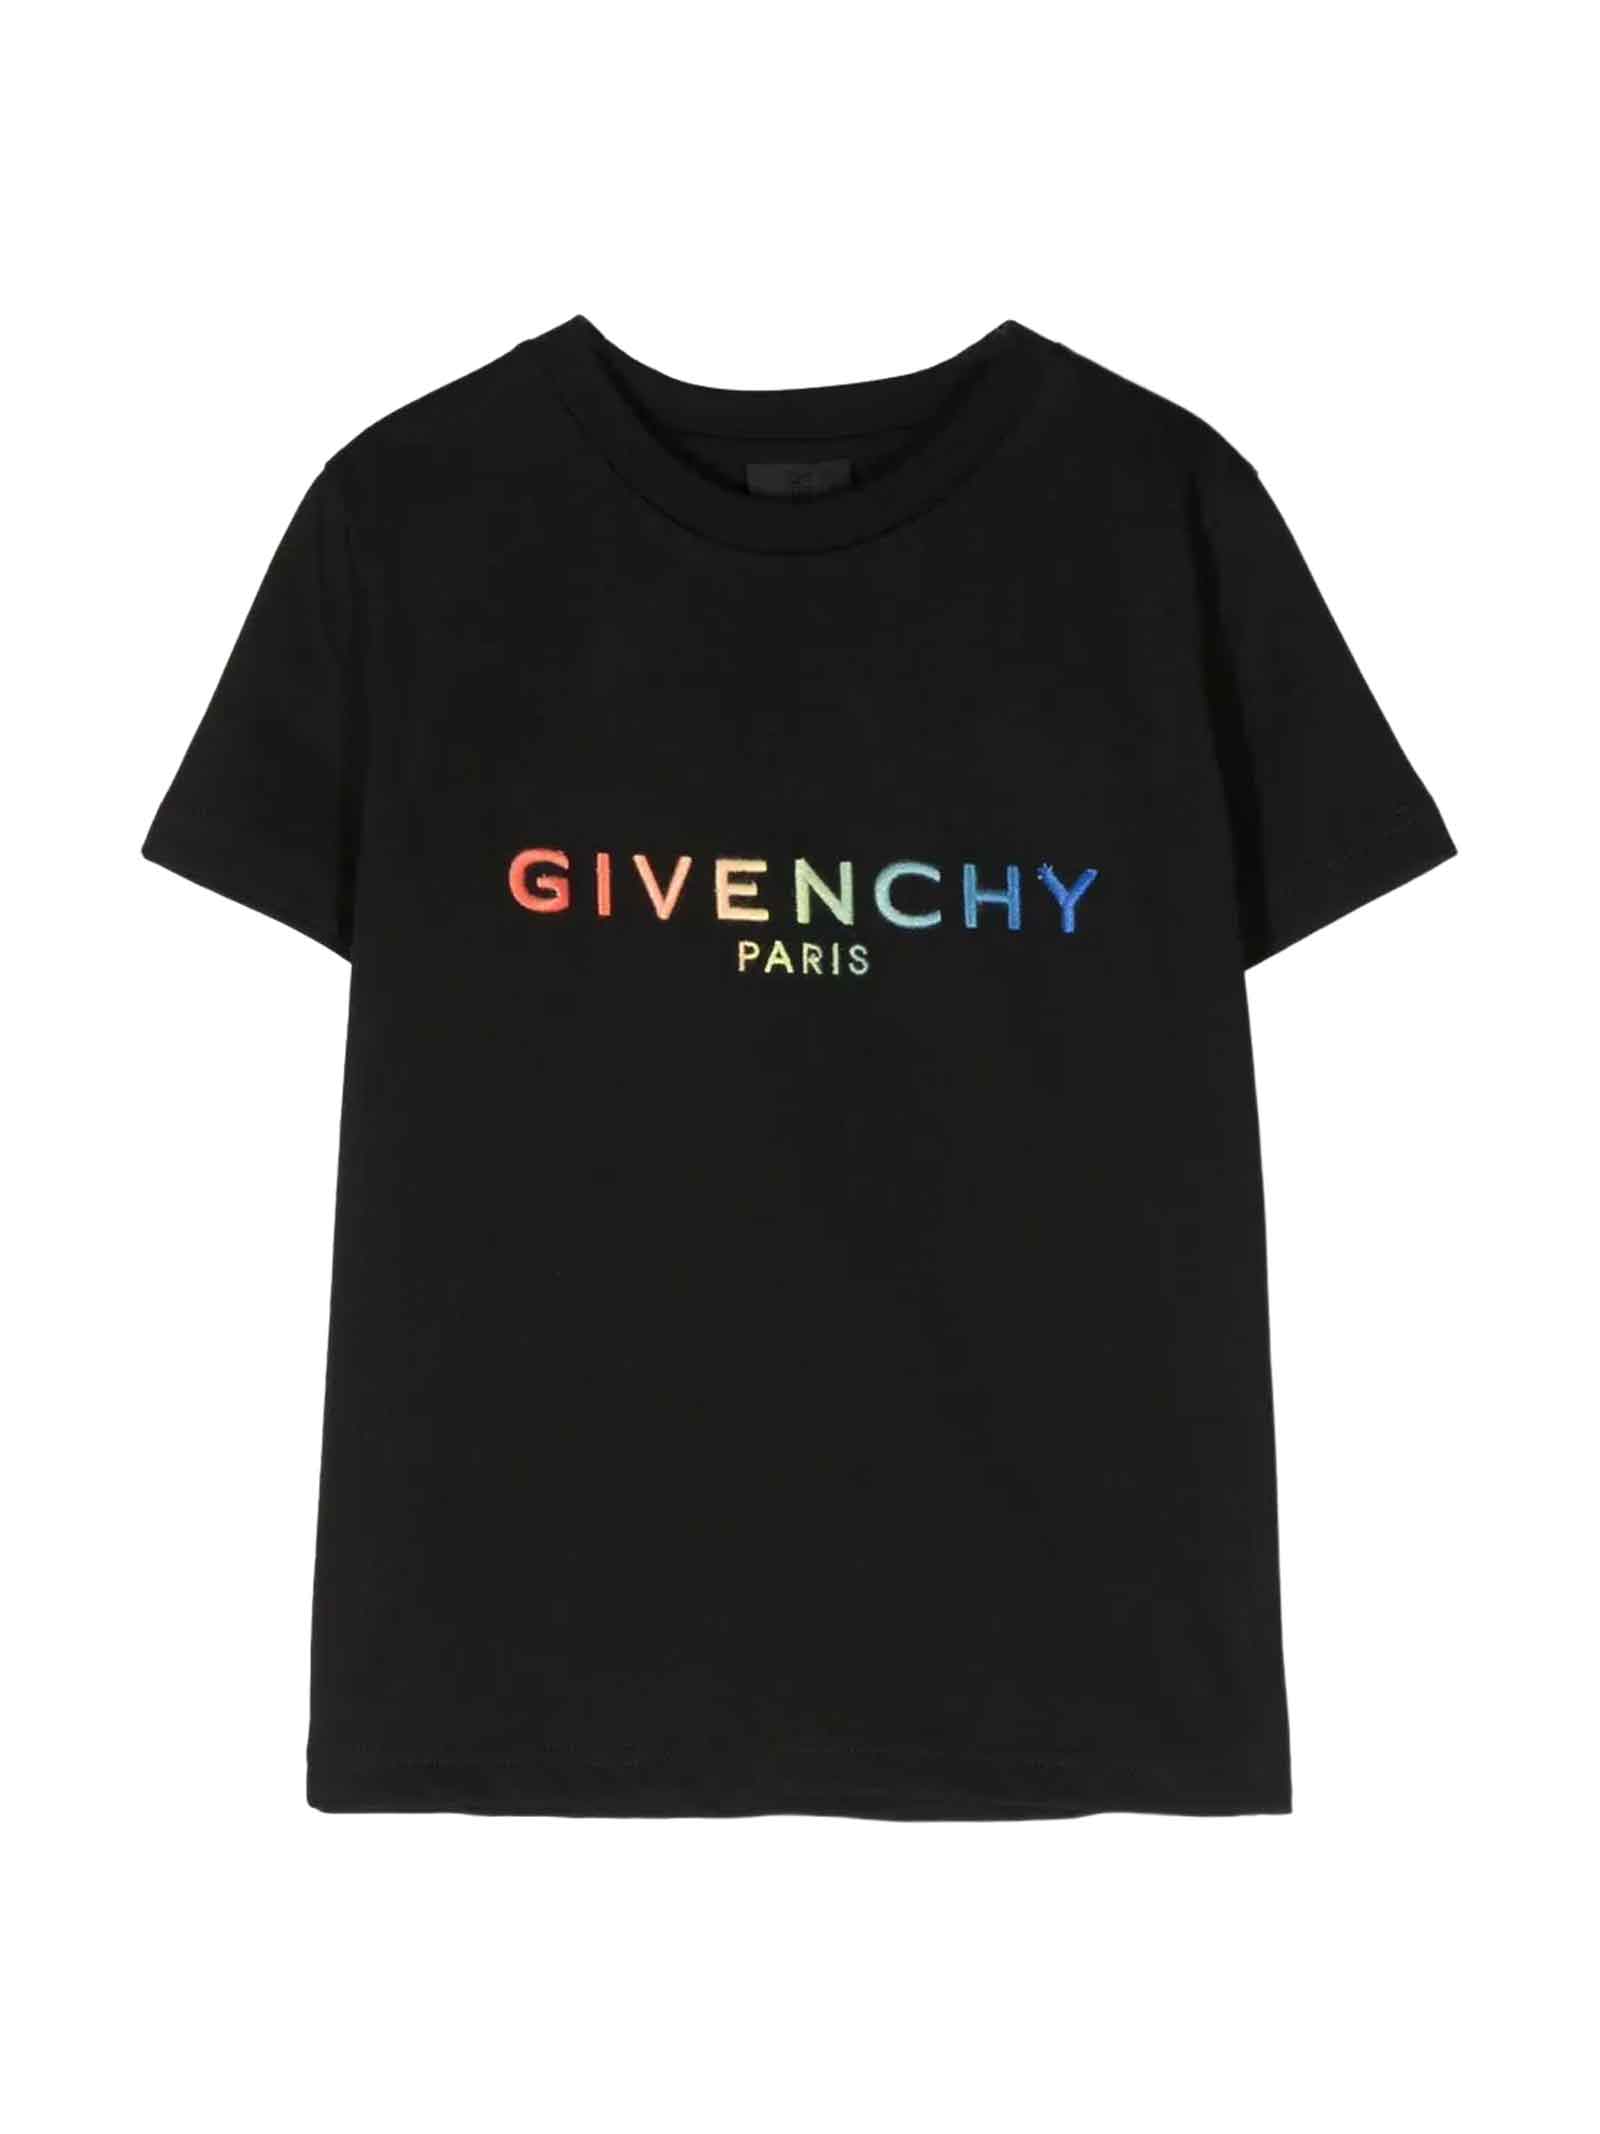 Givenchy Black T-shirt Boy